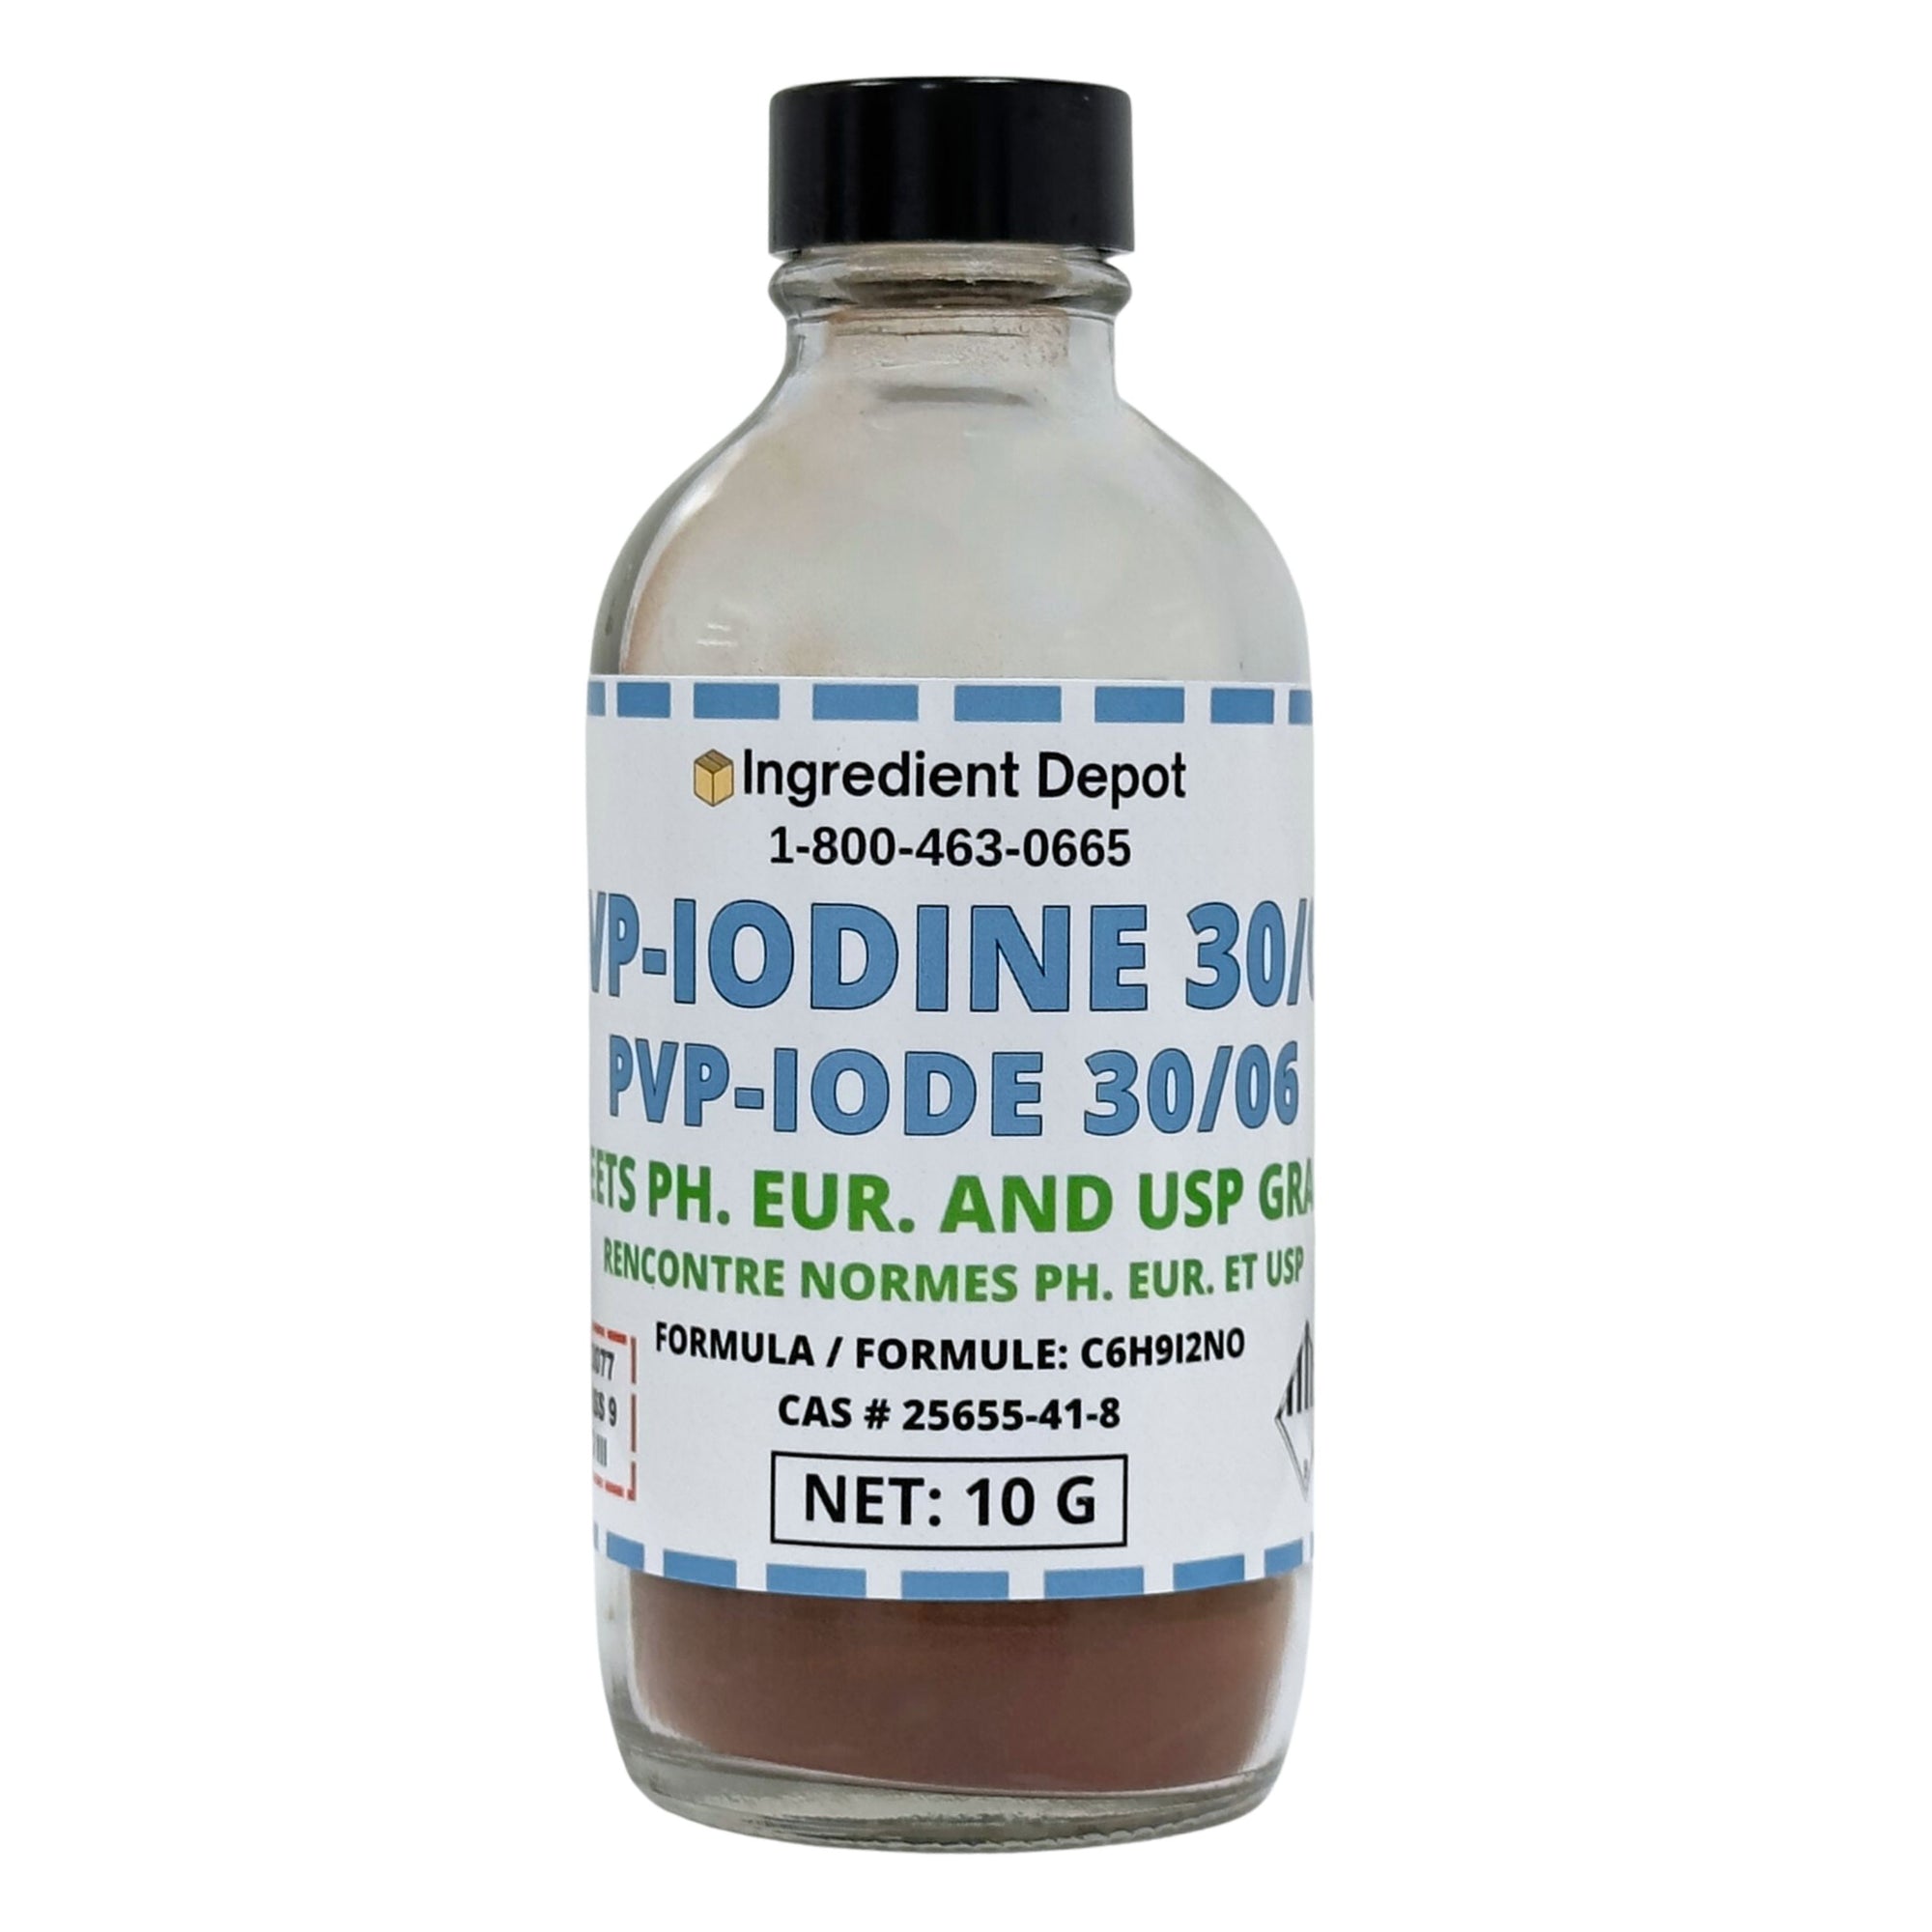 PVP-Iodine 30/06 (PVP-I, Povidone-Iodine) 10g